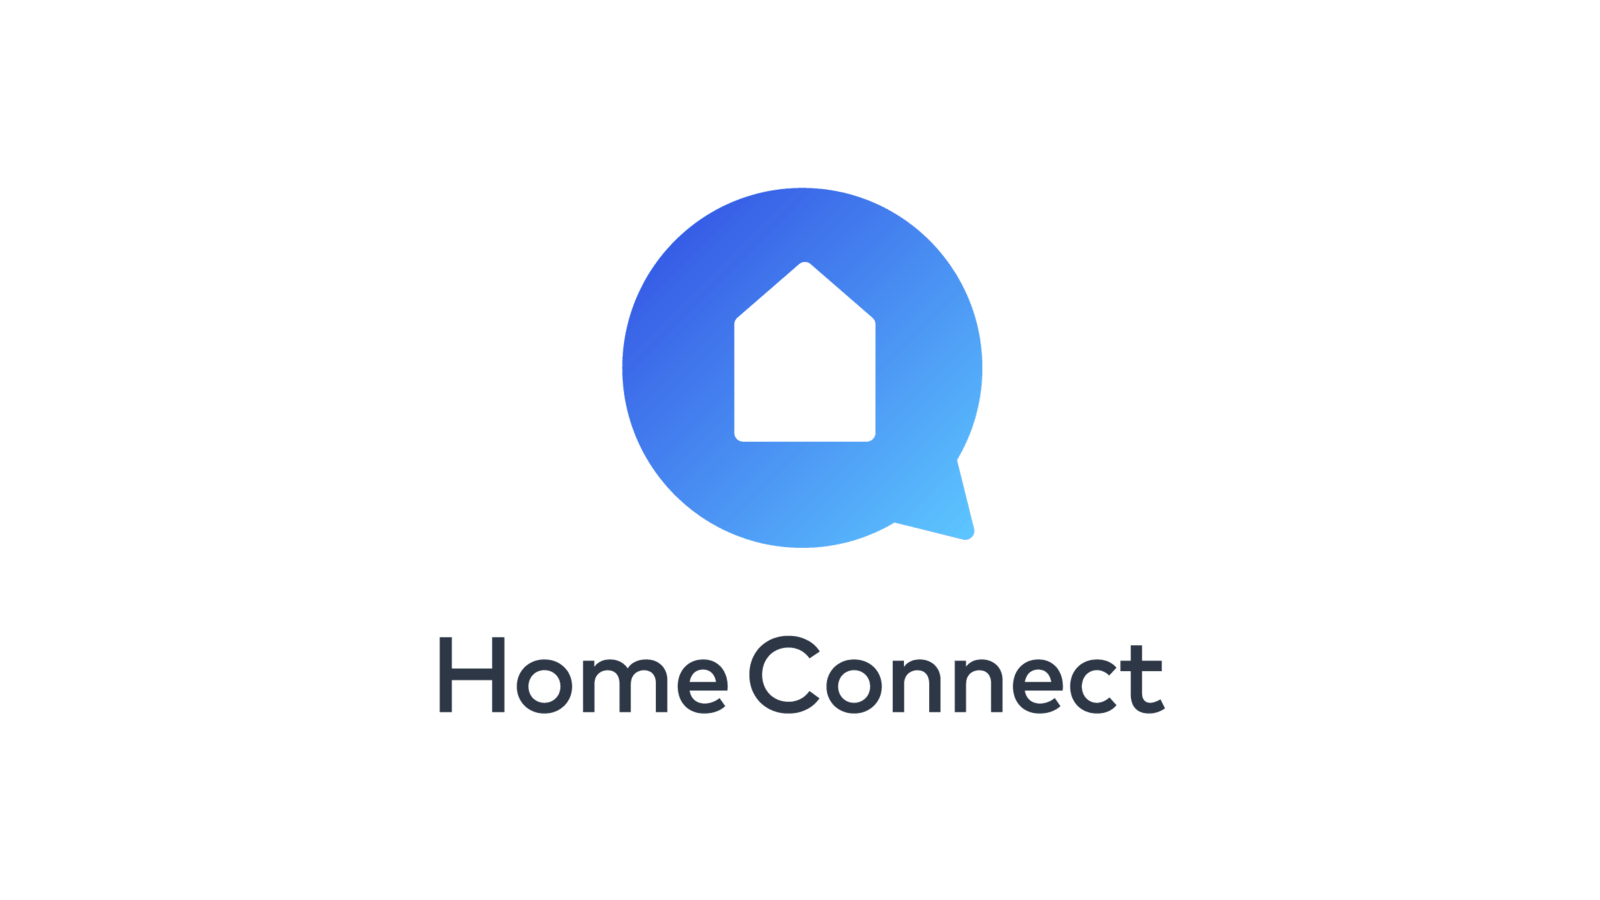 Home connections. Home connect logo. Home connect.